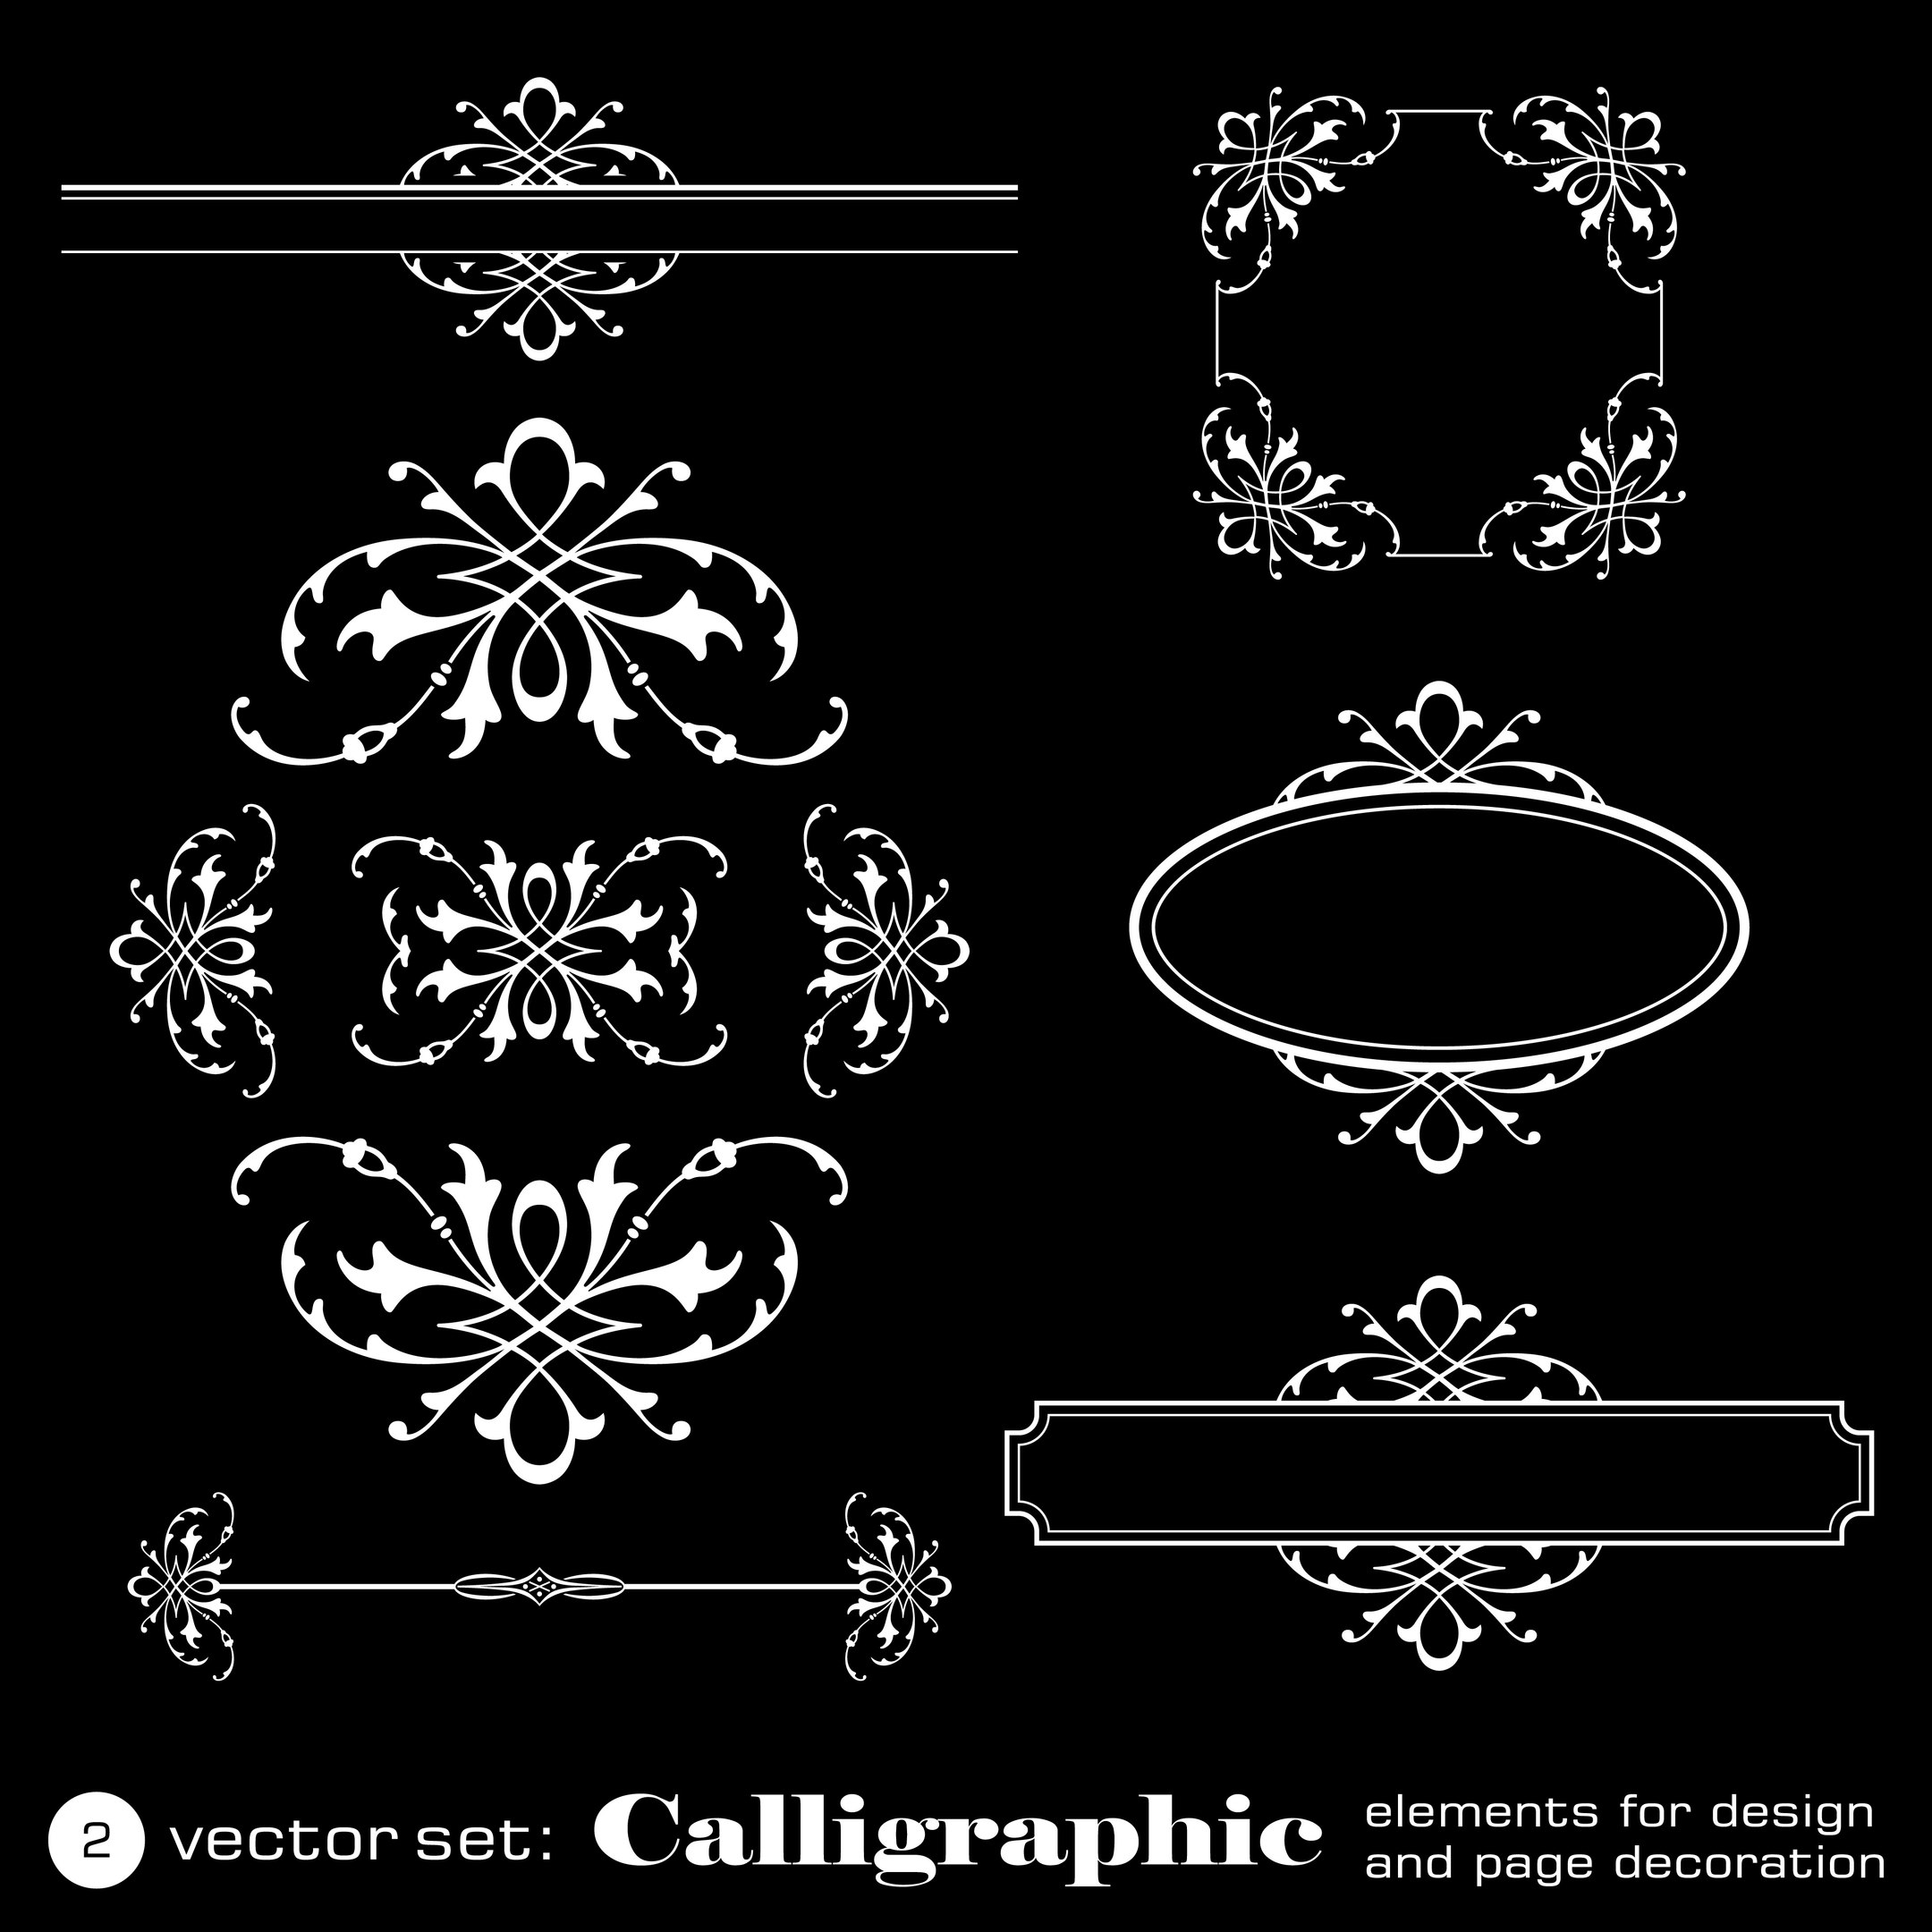 Elementos caligráficos para design em fundo preto